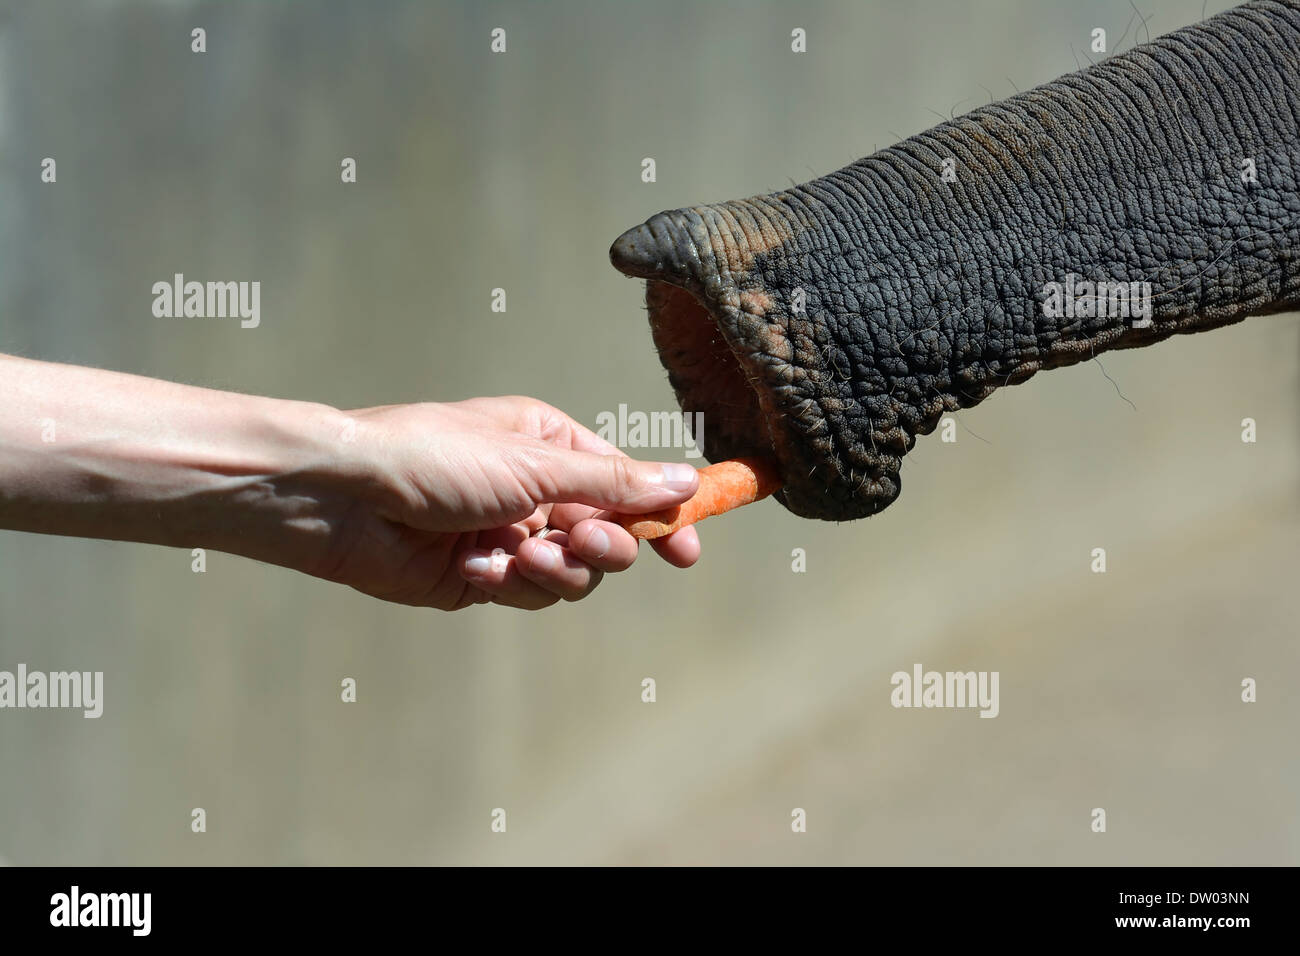 El elefante asiático (Elephas maximus) es alimentado con una zanahoria, Zoológico de Colonia, Colonia, Renania del Norte-Westfalia, Alemania Foto de stock